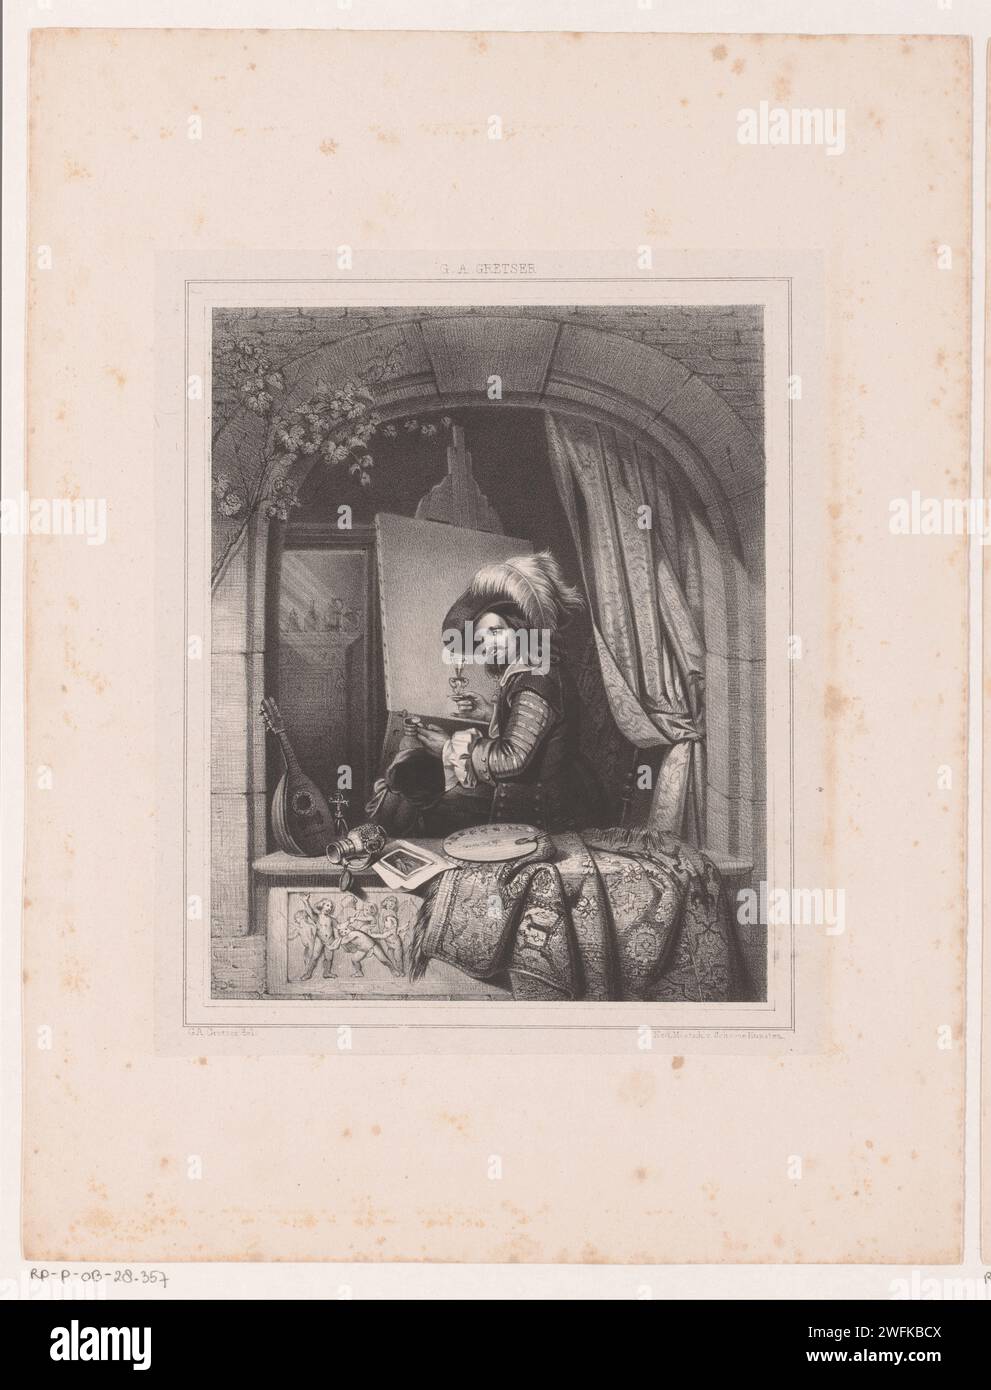 Der Maler hinter seinem Esel, 1825–1864 Druck der Maler trägt ein Kostüm aus dem 17. Jahrhundert. Es gibt eine Laute, eine Karaffe und eine Zeichnung in der Fensterbank. Niederlande Papier. Staffelei (+ Künstler bei der Arbeit). Laute und spezielle Lautenformen, z. B. Theorbo Stockfoto